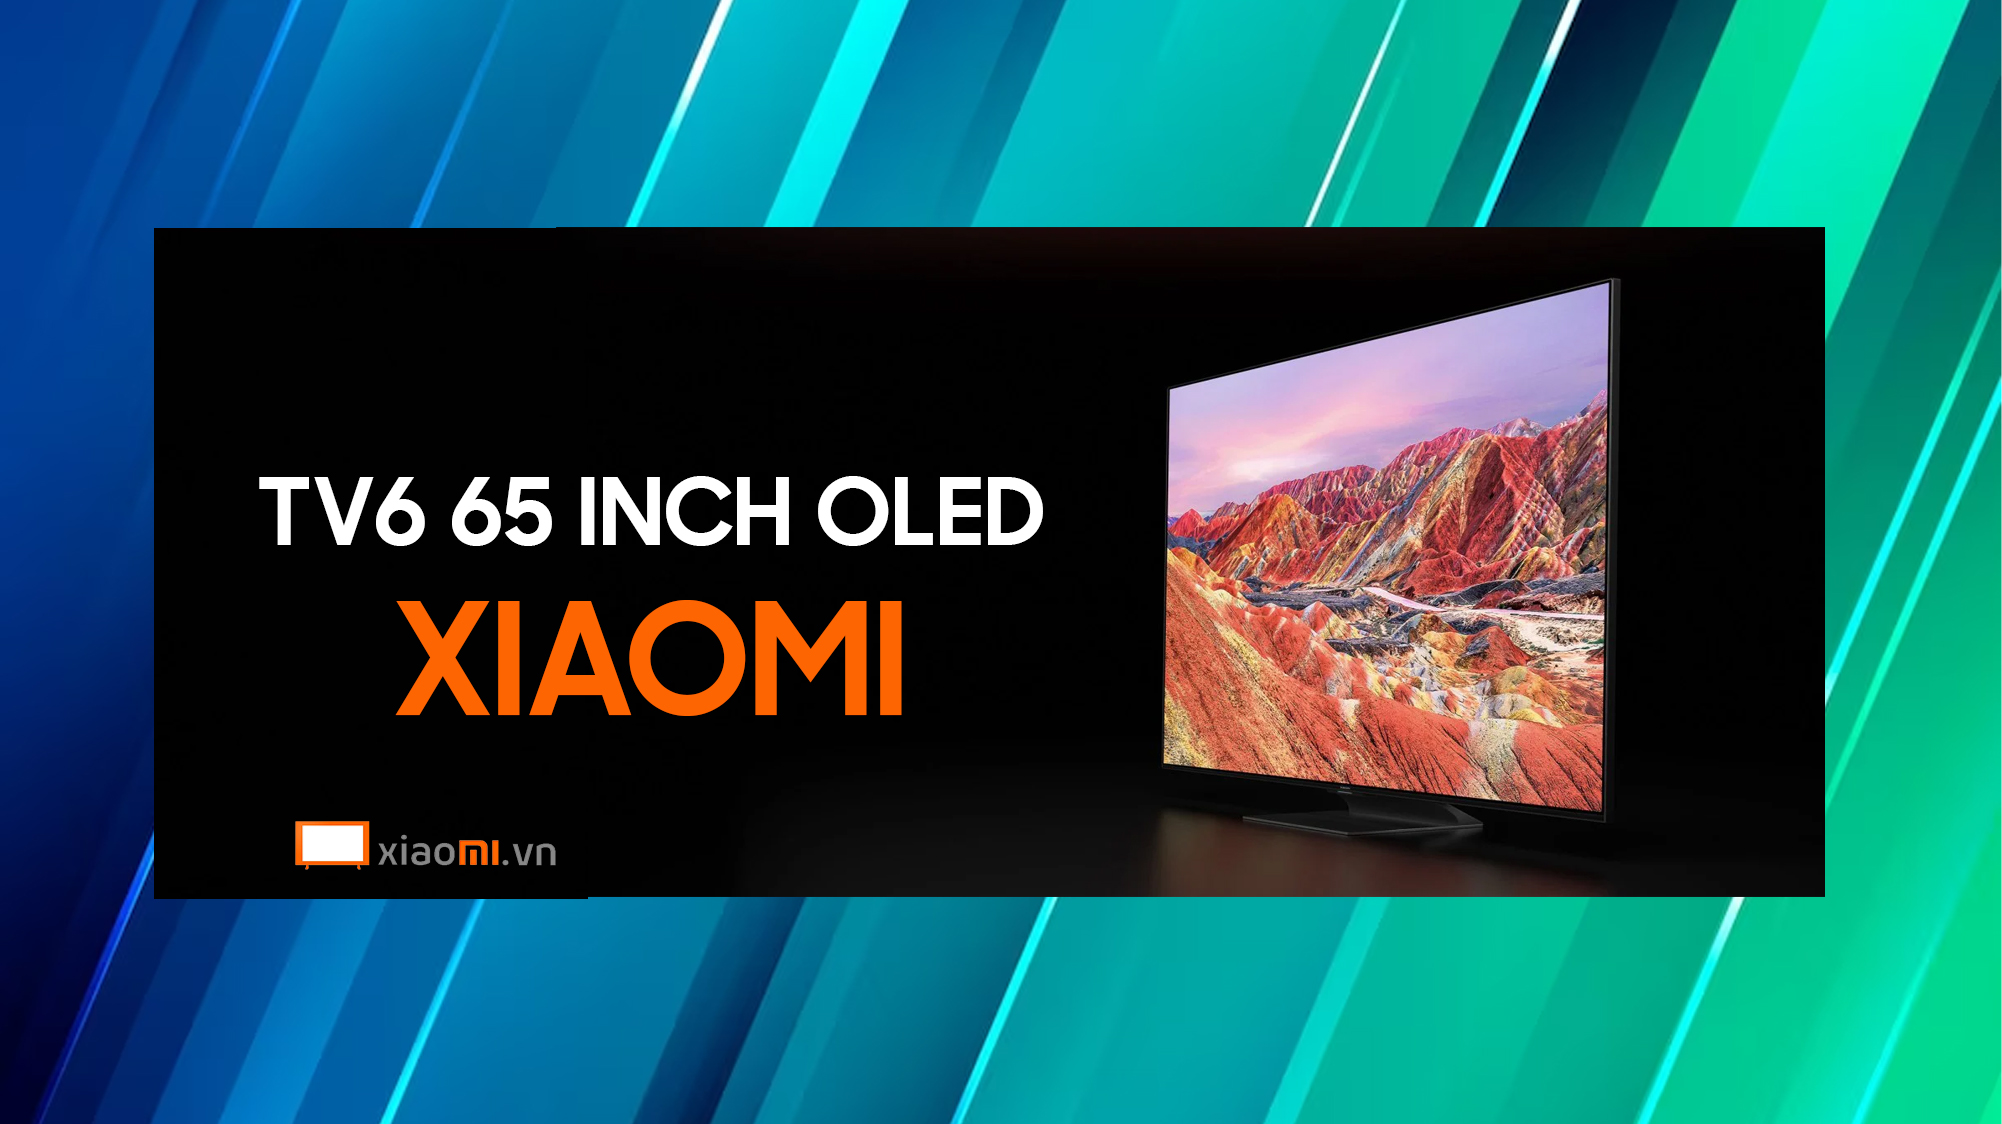 Những điều cần biết khi mua Tivi Xiaomi TV6 65 inch OLED 4K